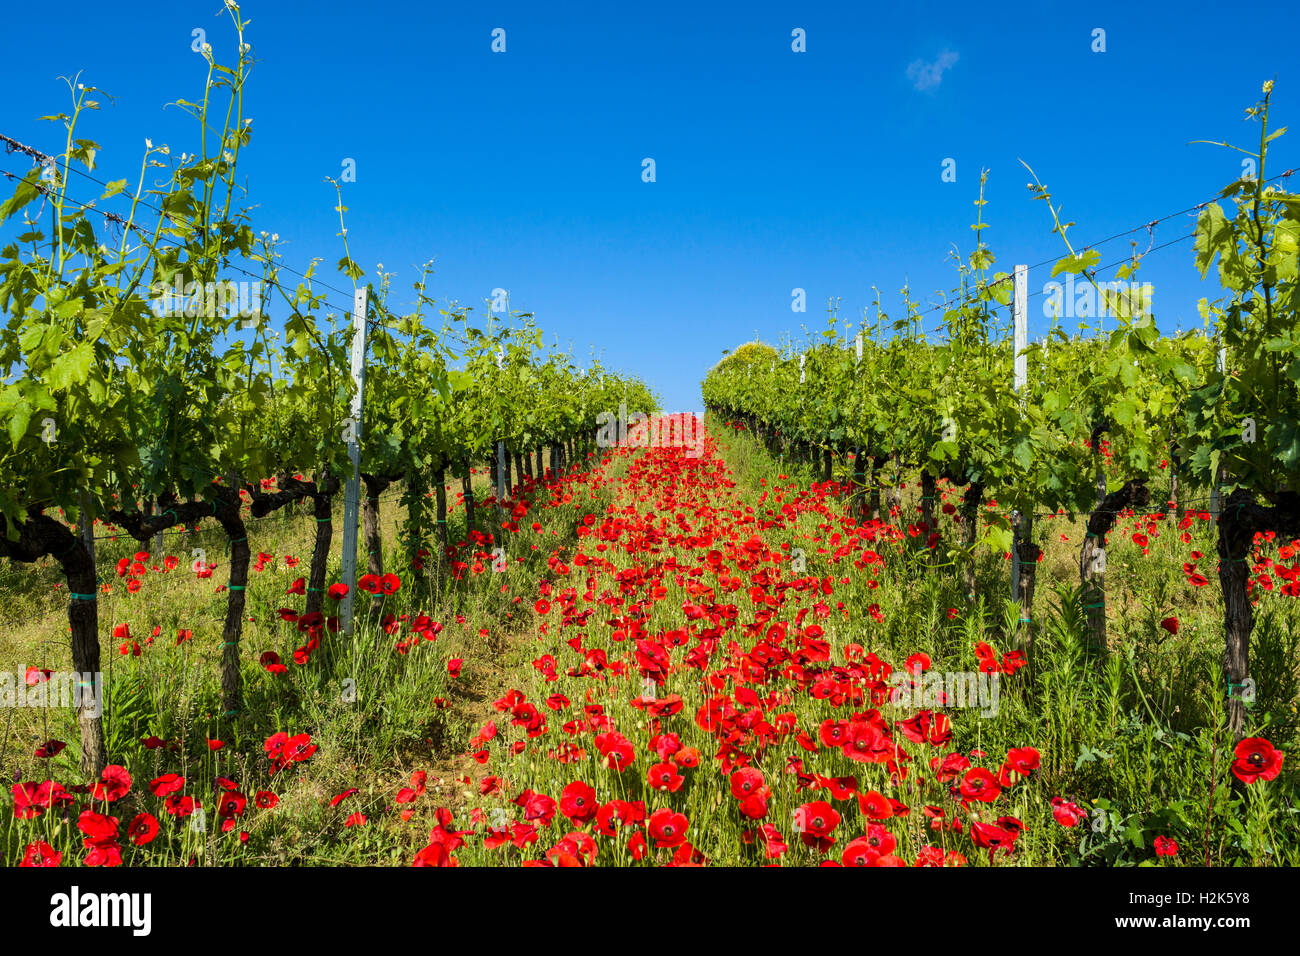 Paysage typique toscan vert dans le Val d'Orcia avec vignes, coquelicots et un ciel bleu, Ascianello, Toscane, Italie Banque D'Images